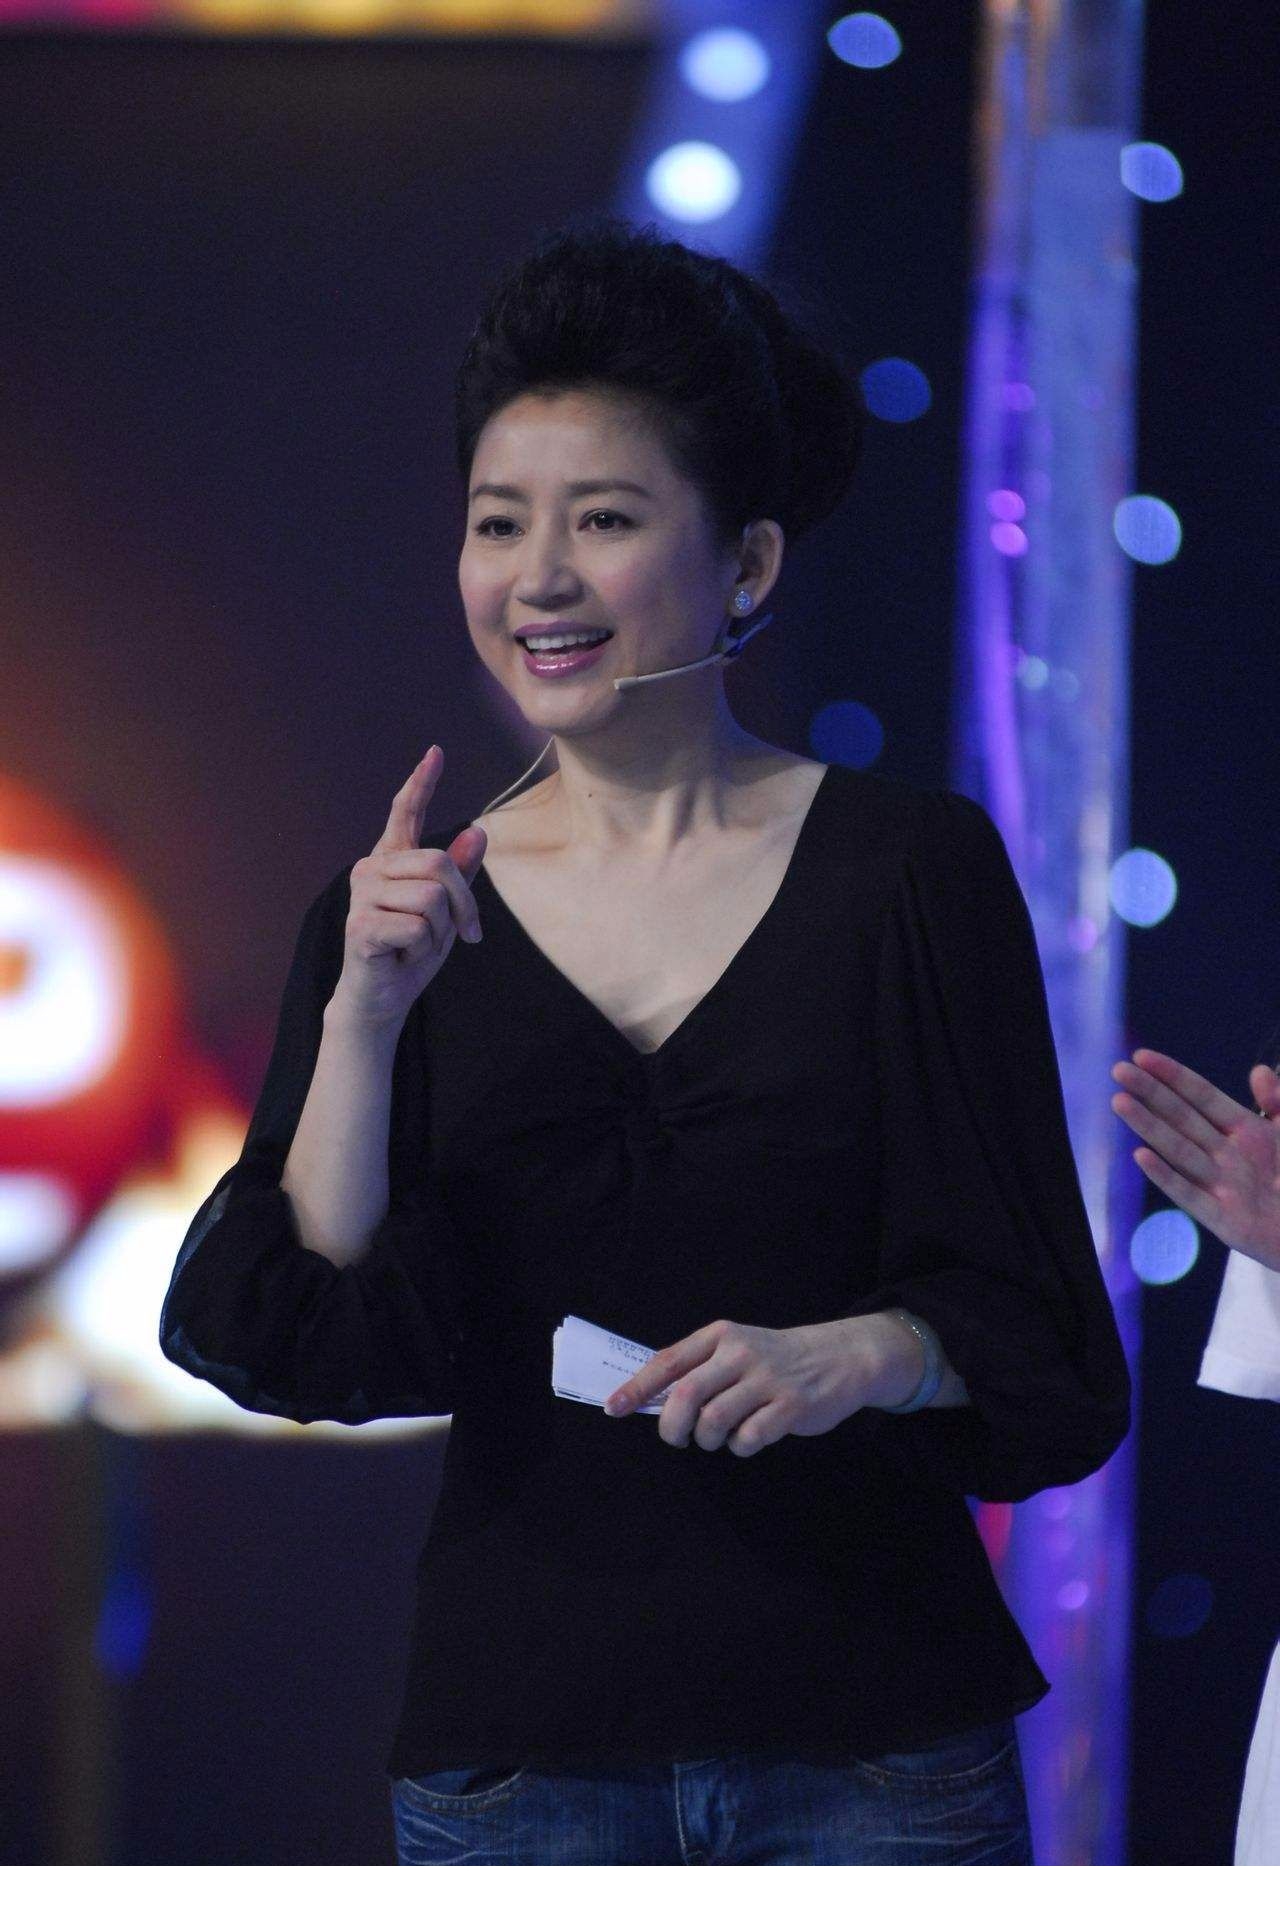 央视主持人王小丫油头垢面差点没认出来,还是短发的她有气质!